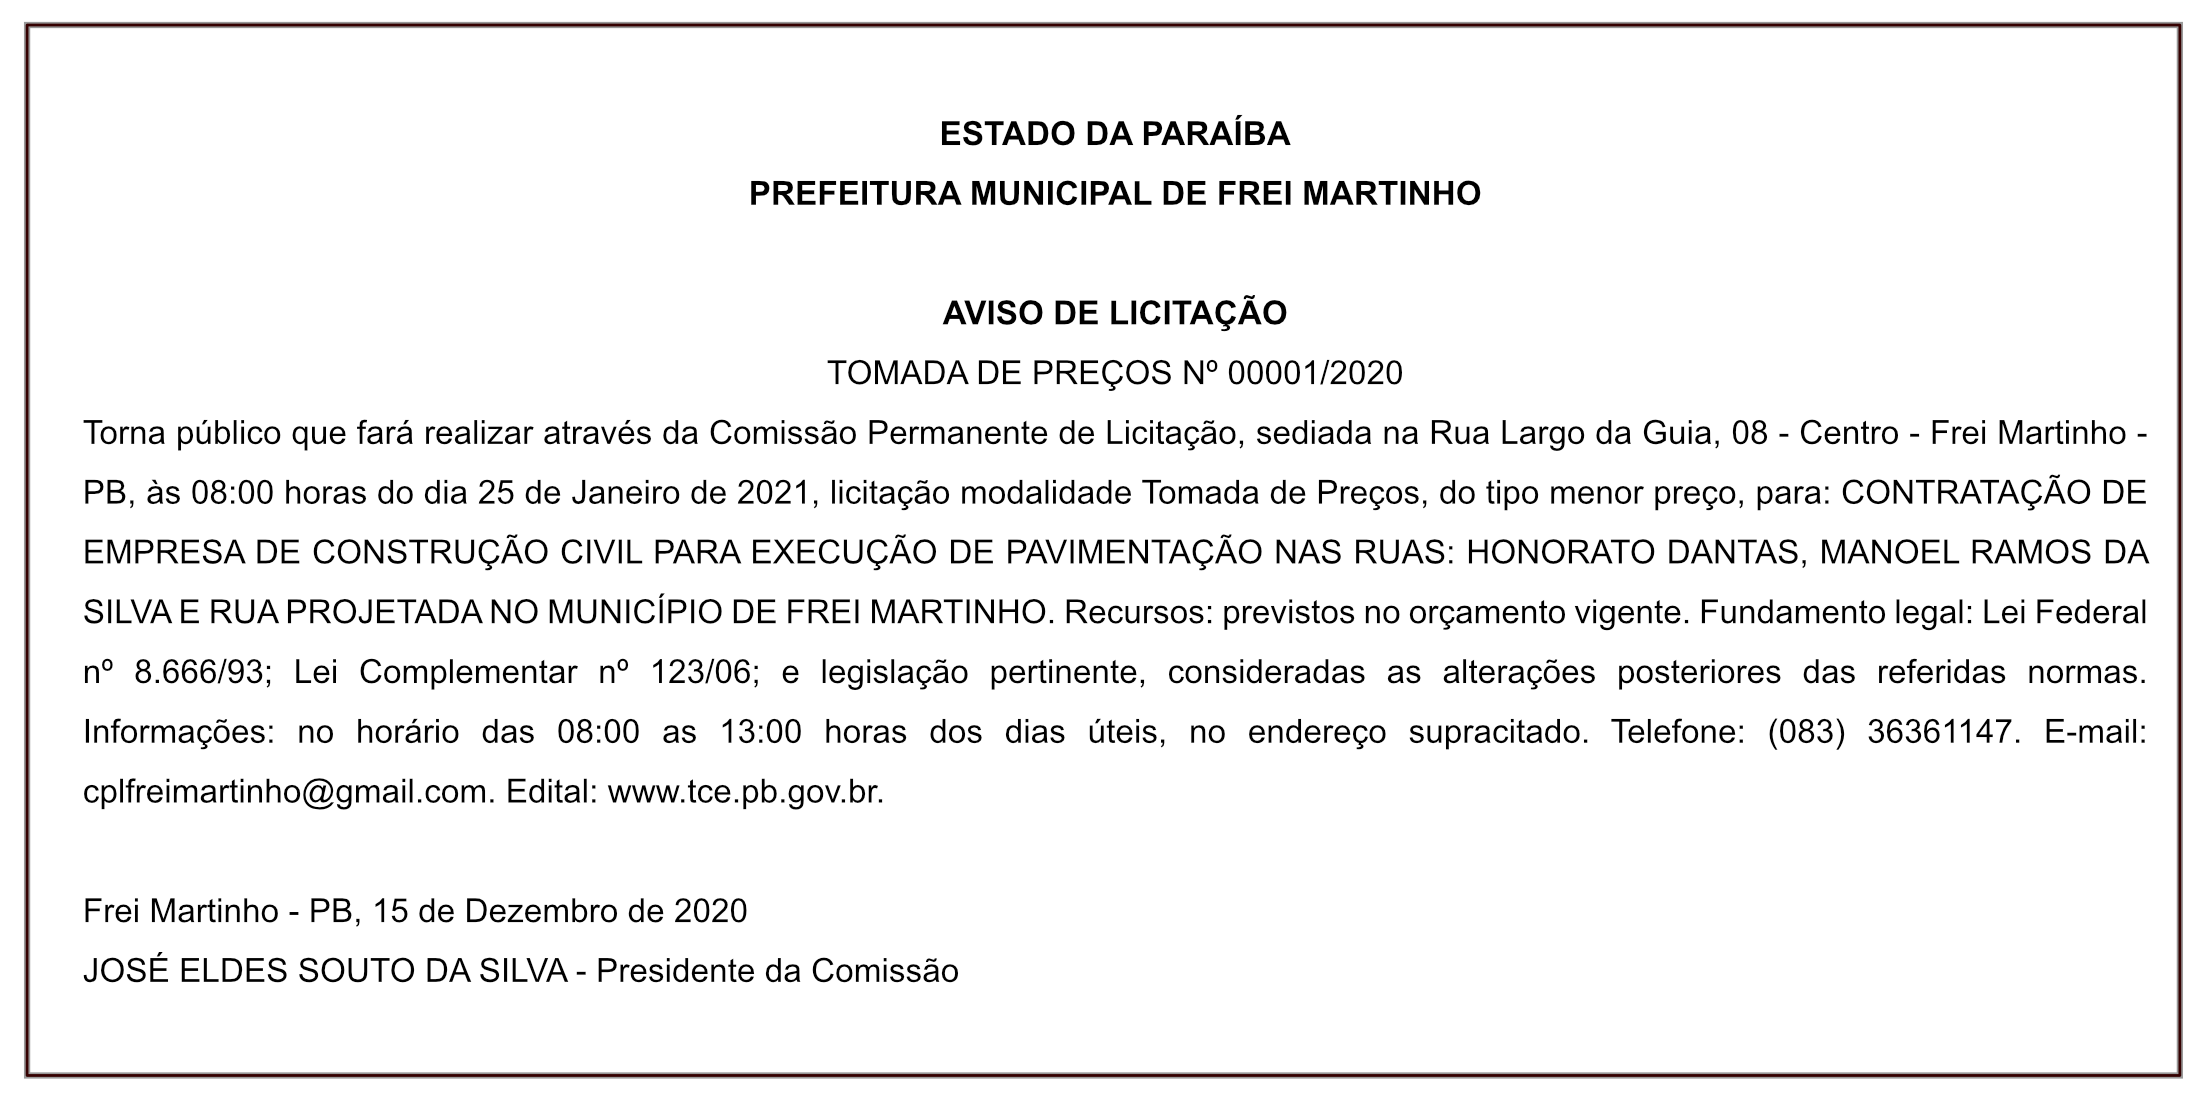 PREFEITURA MUNICIPAL DE FREI MARTINHO – AVISO DE LICITAÇÃO – TOMADA DE PREÇOS Nº 00001/2020